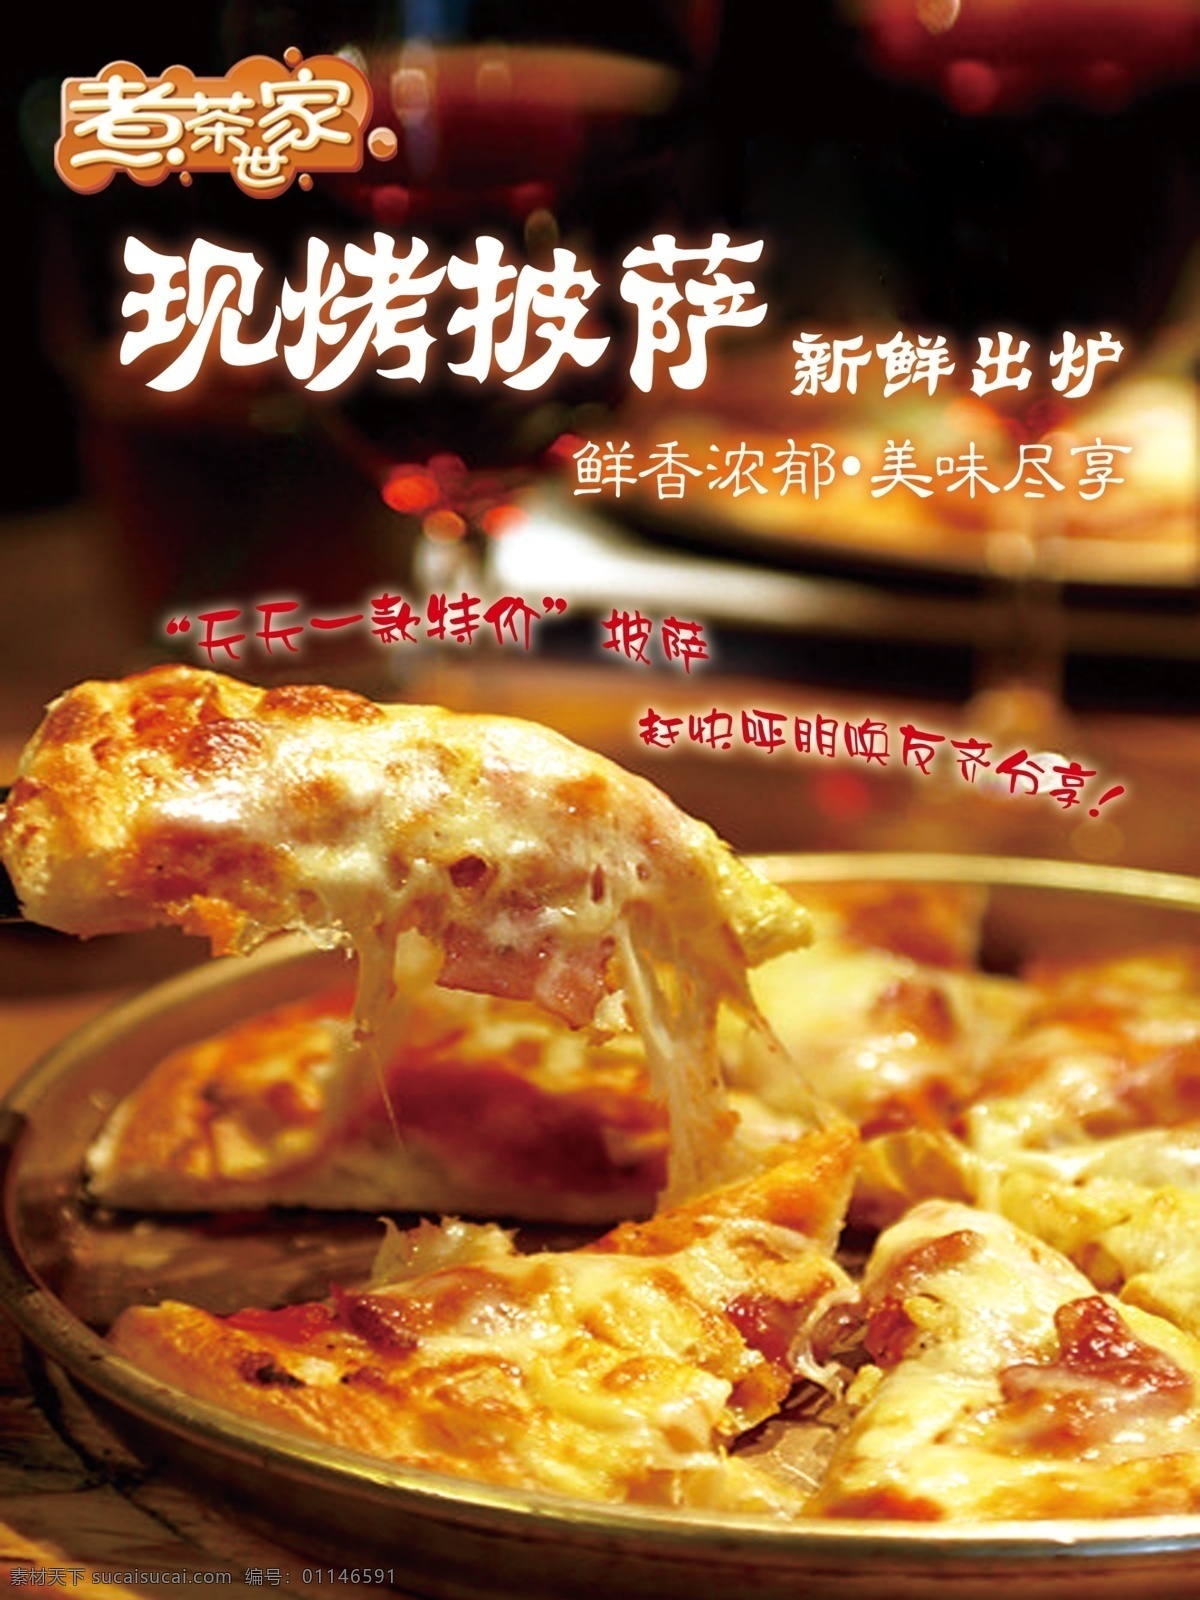 现 烤 披萨 新鲜 出炉 logo 背景 红色字体 披萨图片 字体 psd源文件